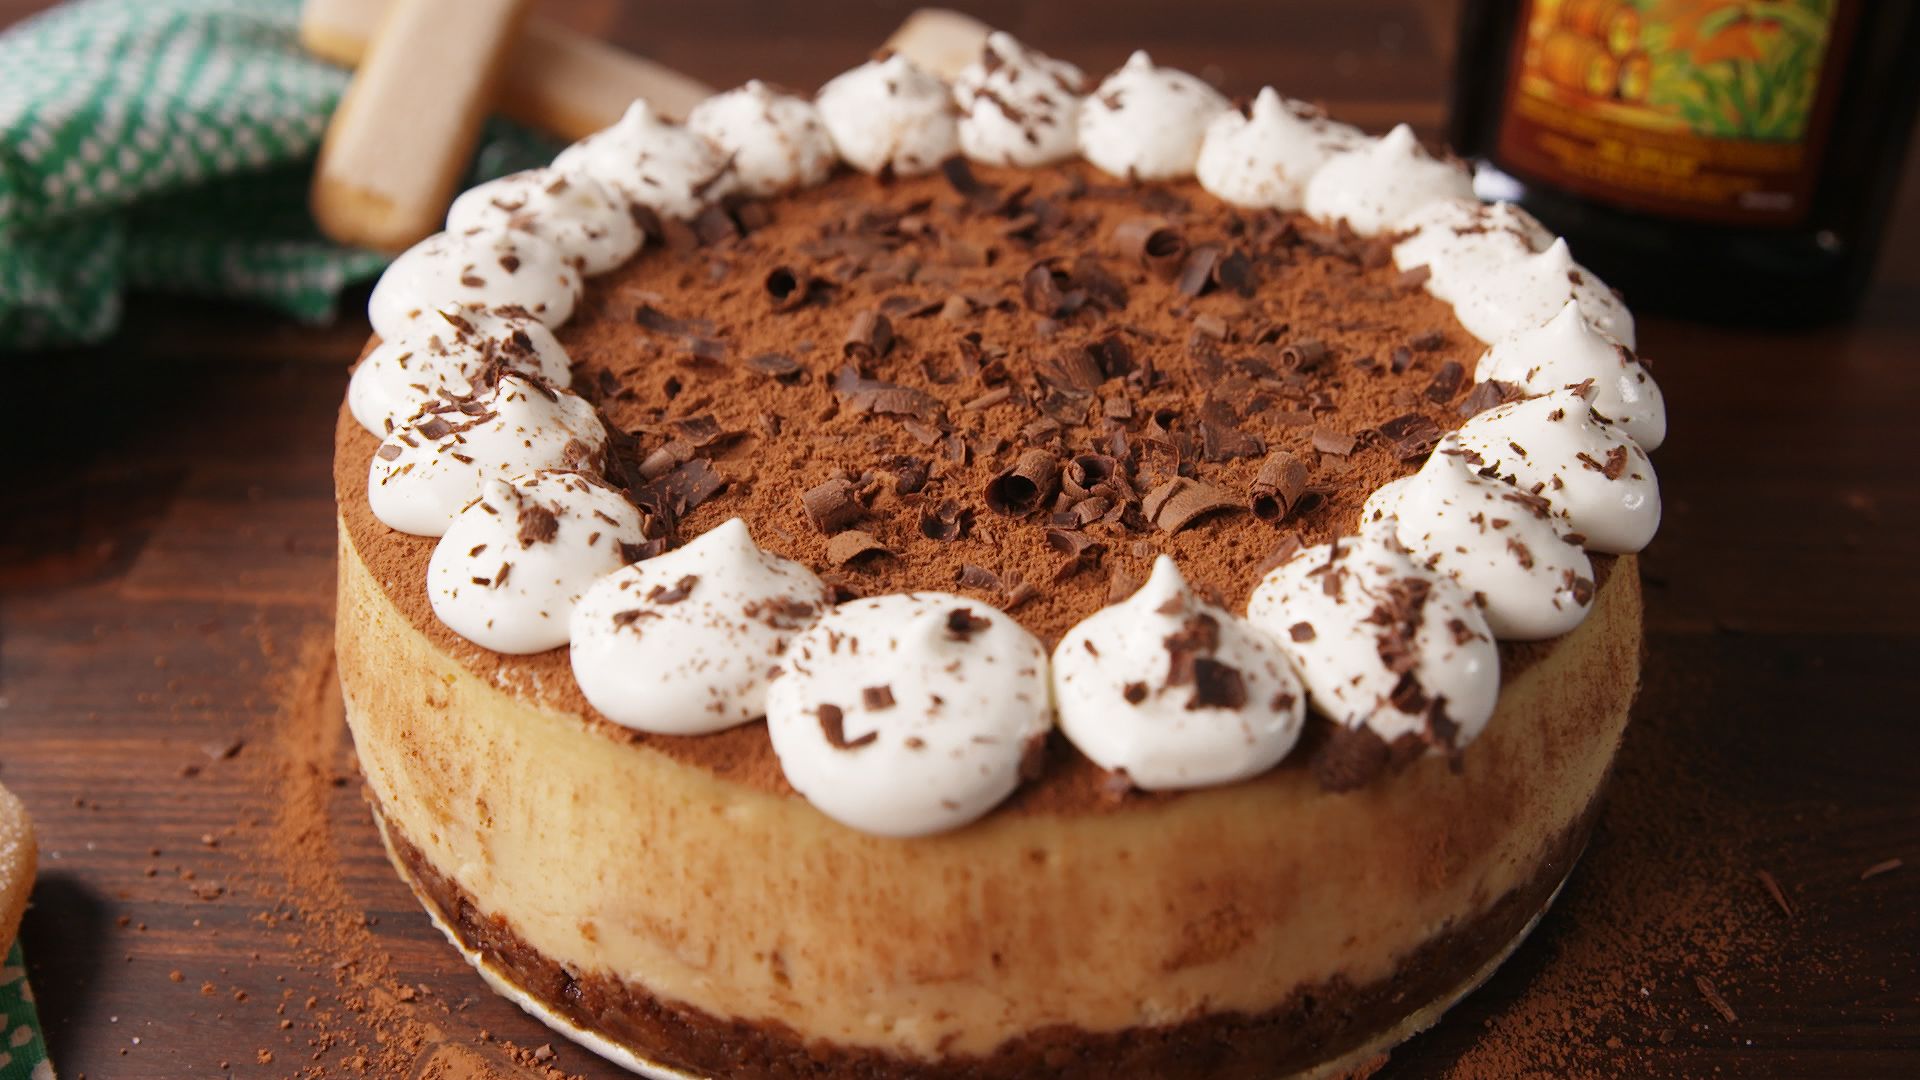 Best Tiramisu Cheesecake Recipe - How to Make Tiramisu Cheesecake